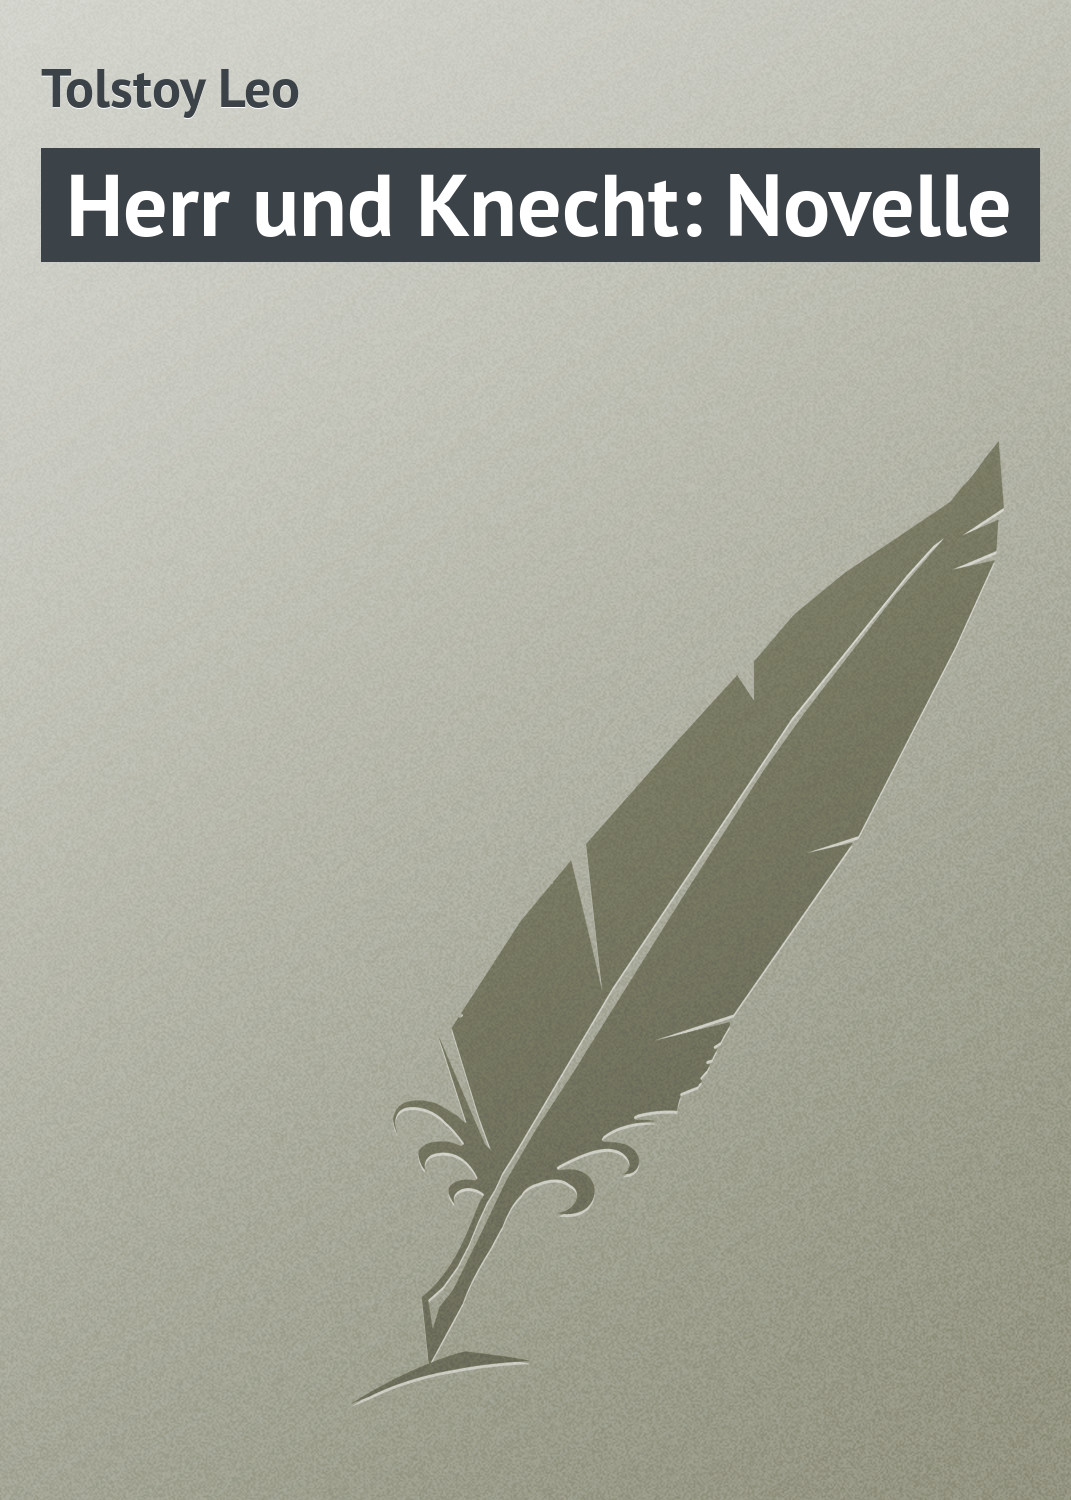 Книга Herr und Knecht: Novelle из серии , созданная Leo Tolstoy, может относится к жанру Иностранные языки, Русская классика, Классическая проза. Стоимость электронной книги Herr und Knecht: Novelle с идентификатором 23167947 составляет 5.99 руб.